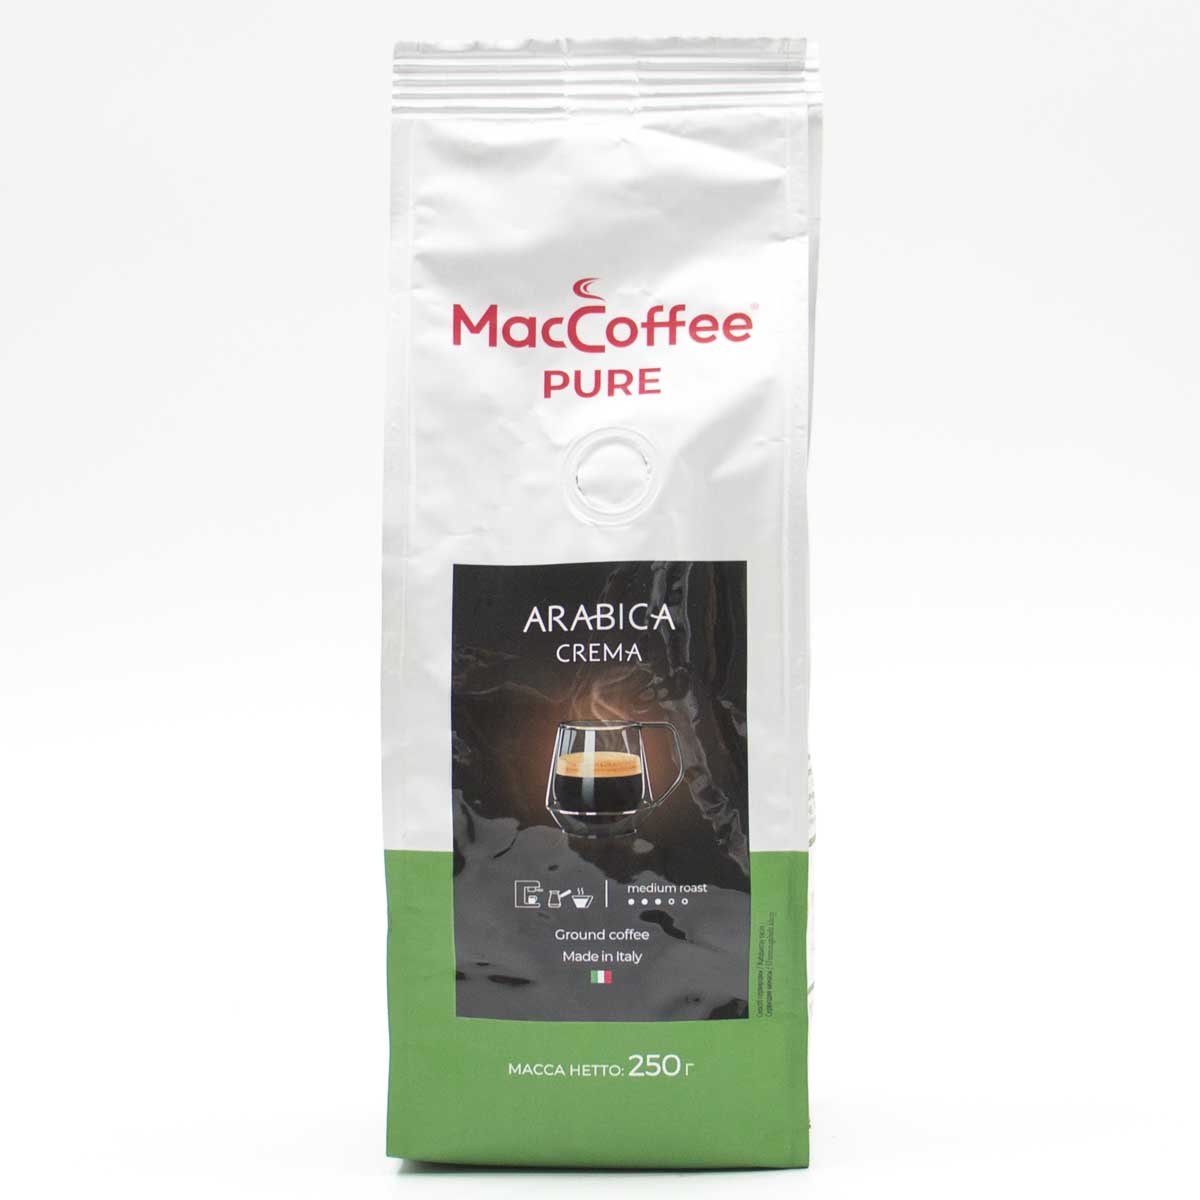 Кофе в зернах maccoffee. Кофе Маккофе Пьюр Арабика крема 250г зерно. Маккофе Пьюр Арабика крема 1 кг. MACCOFFEE зерновой. Кофе жареный натуральный в зернах пуре Арабика крема Маккофе 250гр.